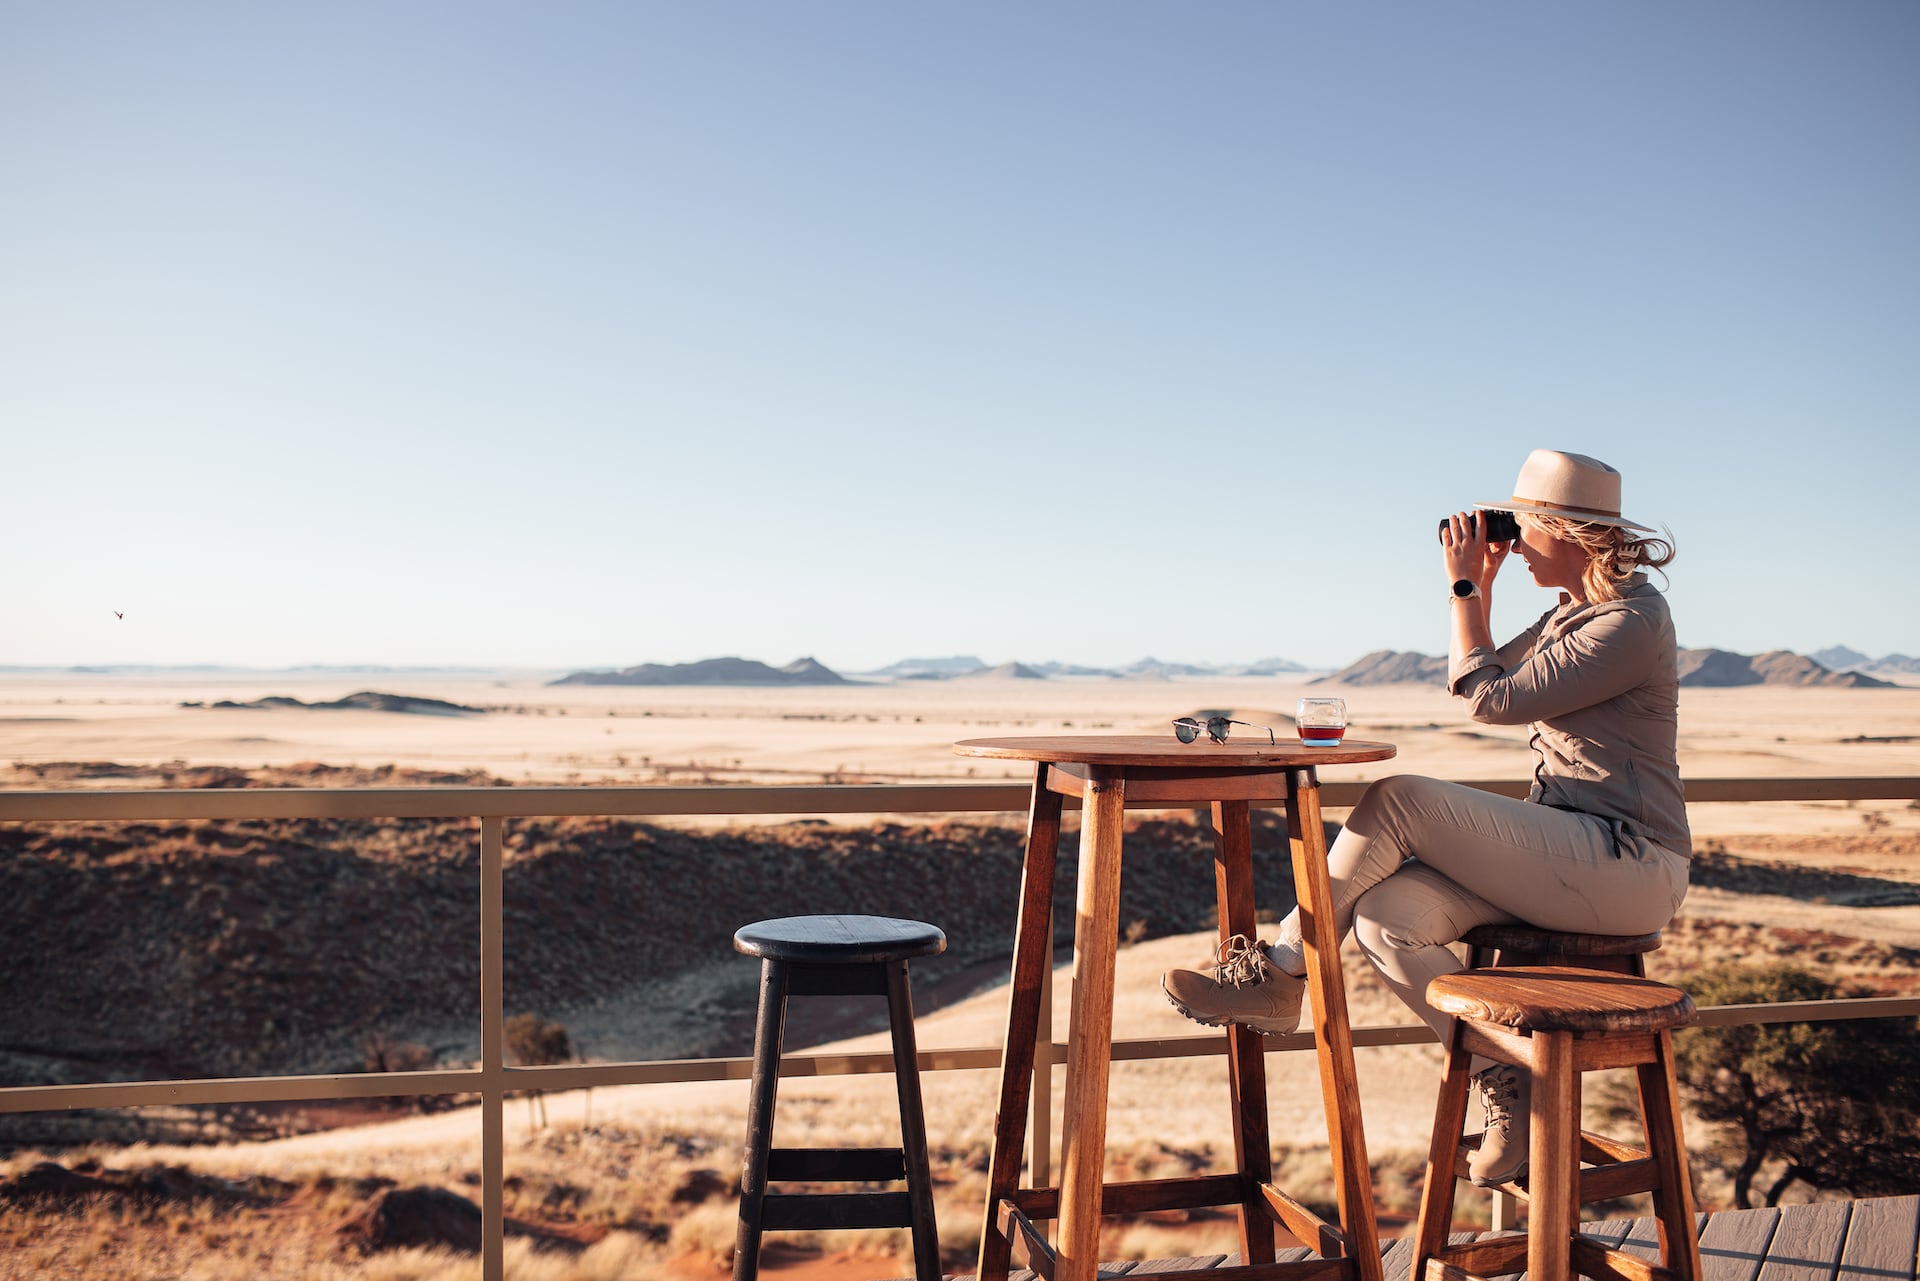 Fotografie Auf Reisen: Frau schaut mit Fernglas in die Wüste Namib